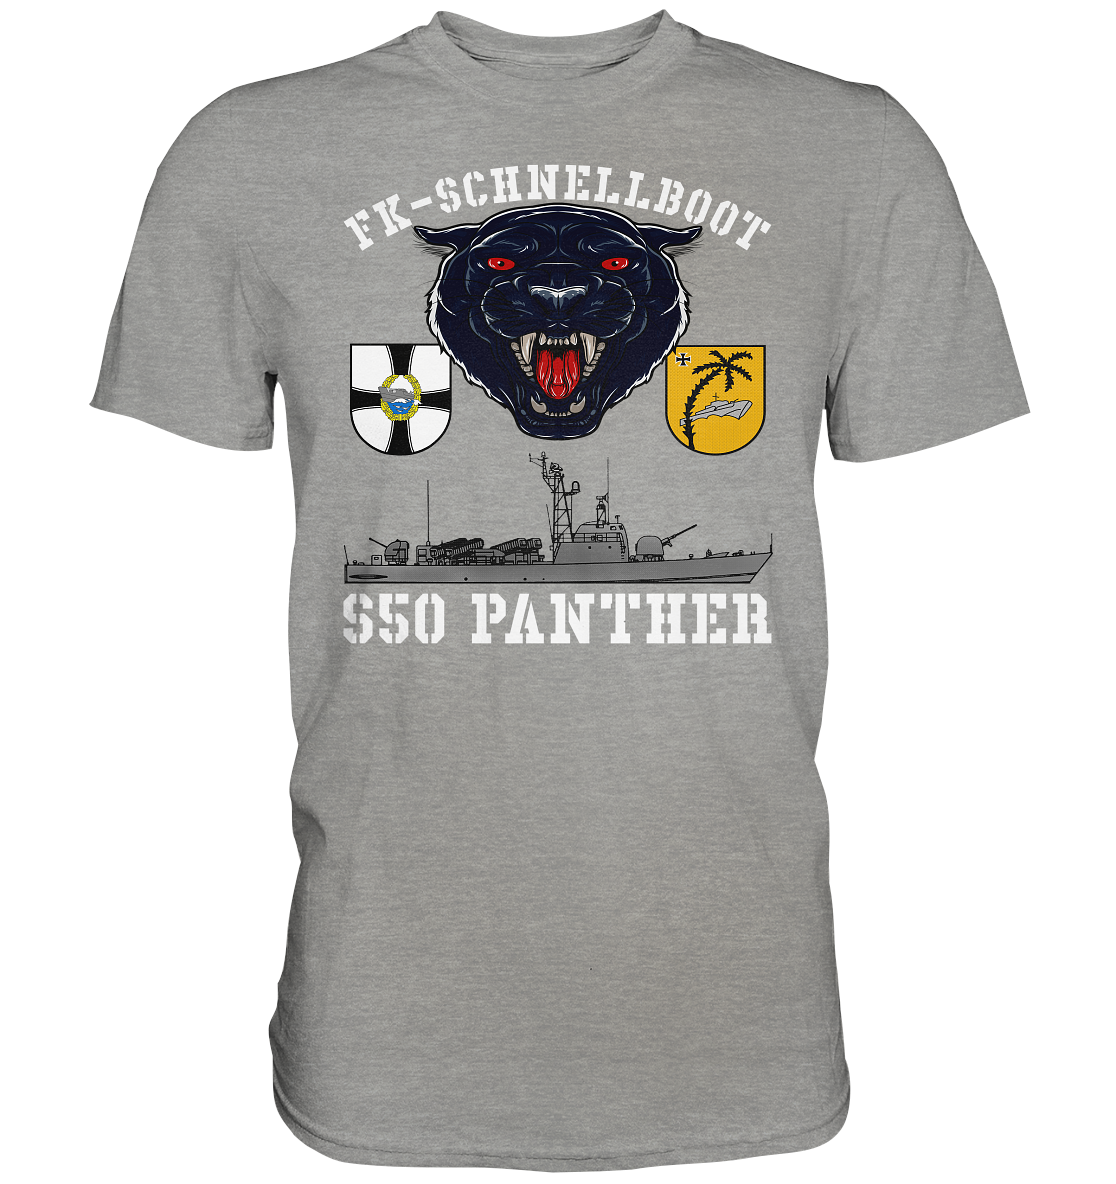 S50 PANTHER - Premium Shirt